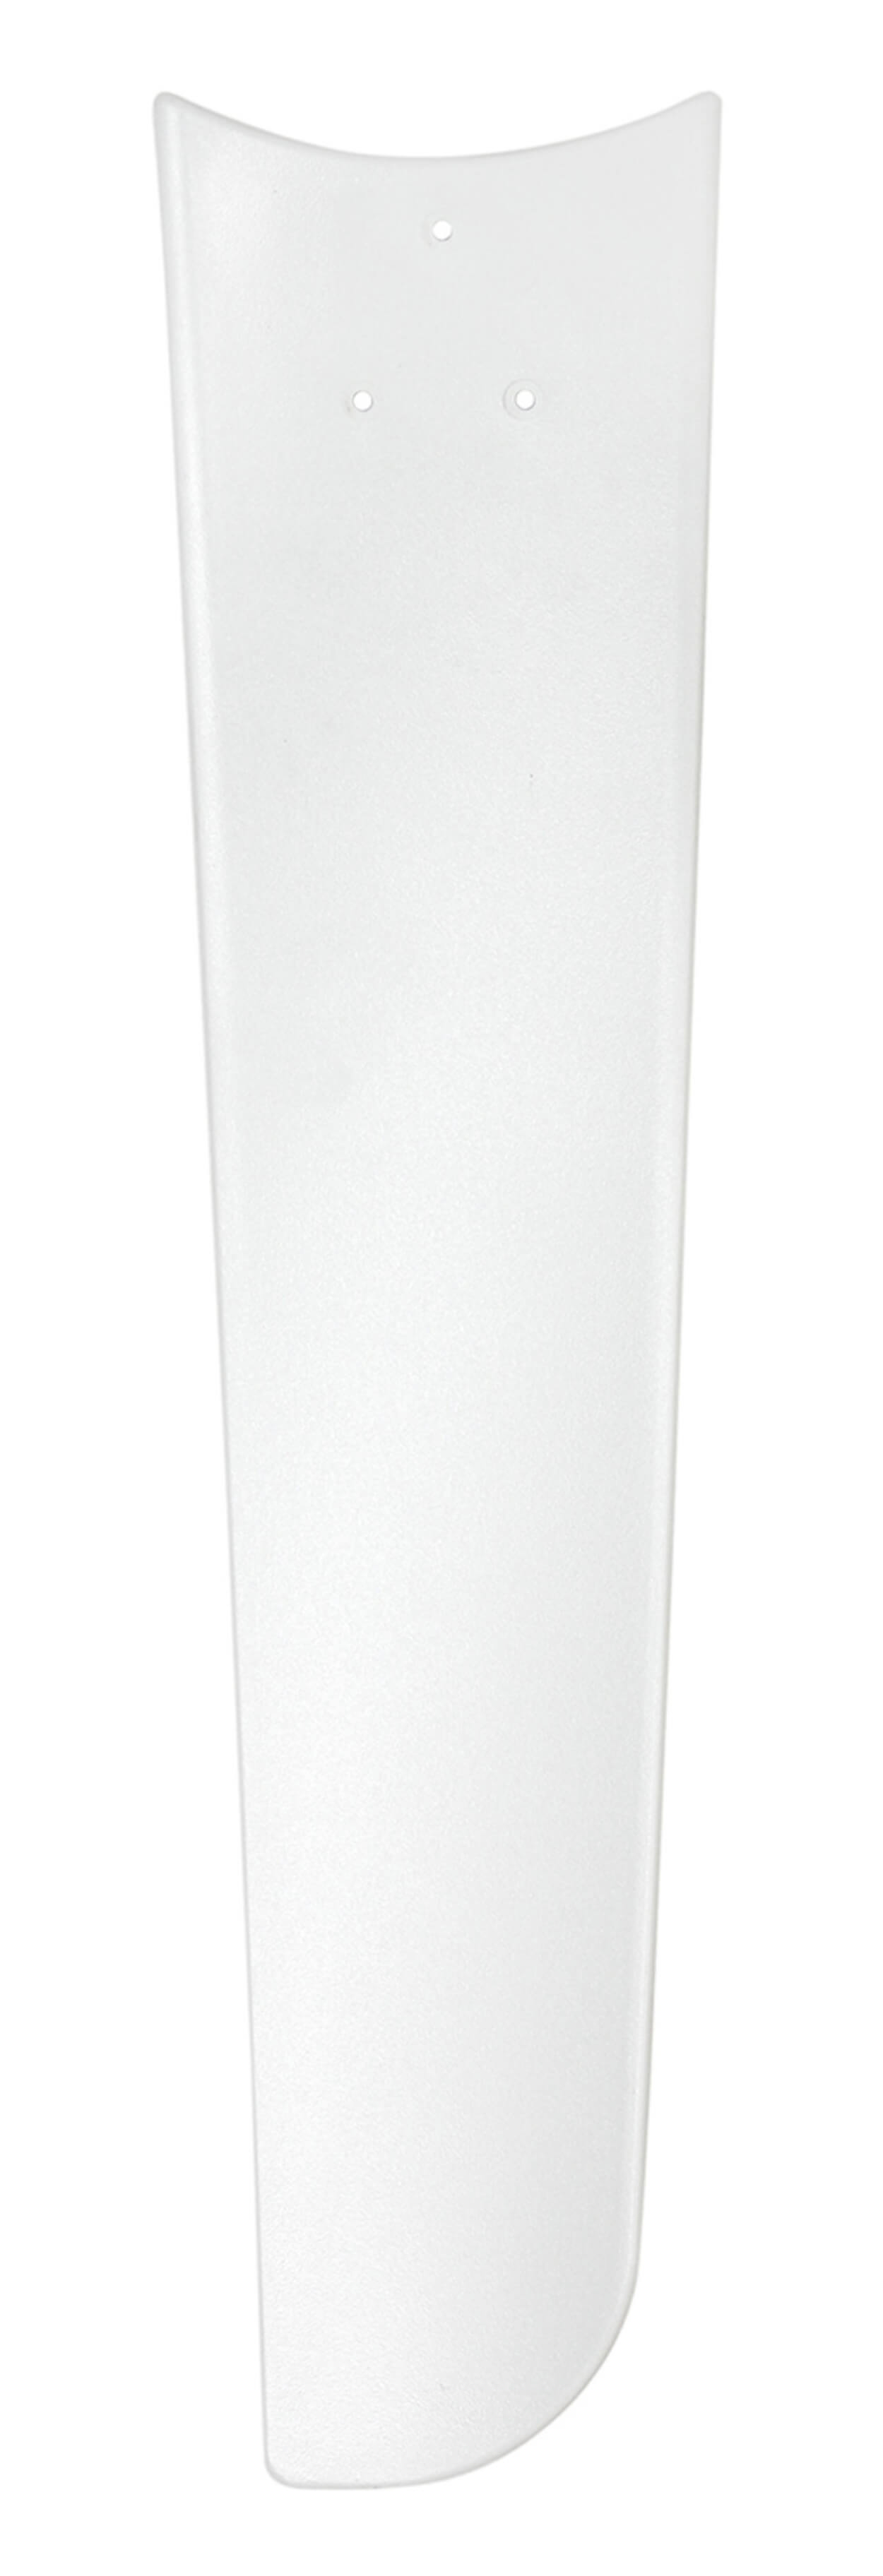 CASAFAN Mirage Deckenventilator Weiß Watt) (62